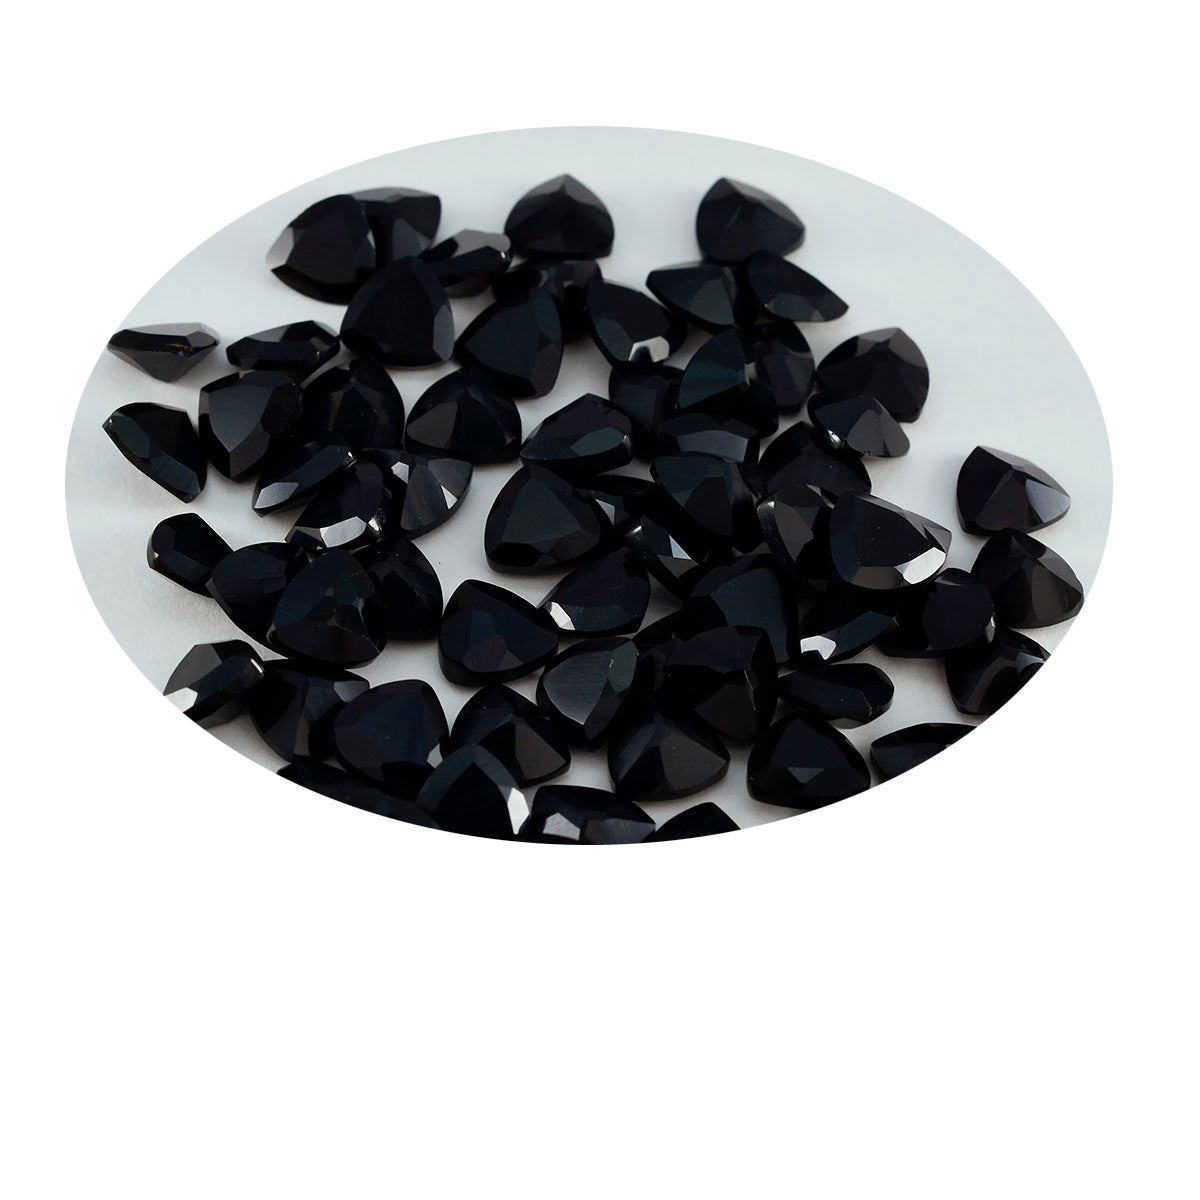 Riyogems 1PC Genuine Black Onyx Faceted 6x6 mm Trillion Shape A1 Quality Gems